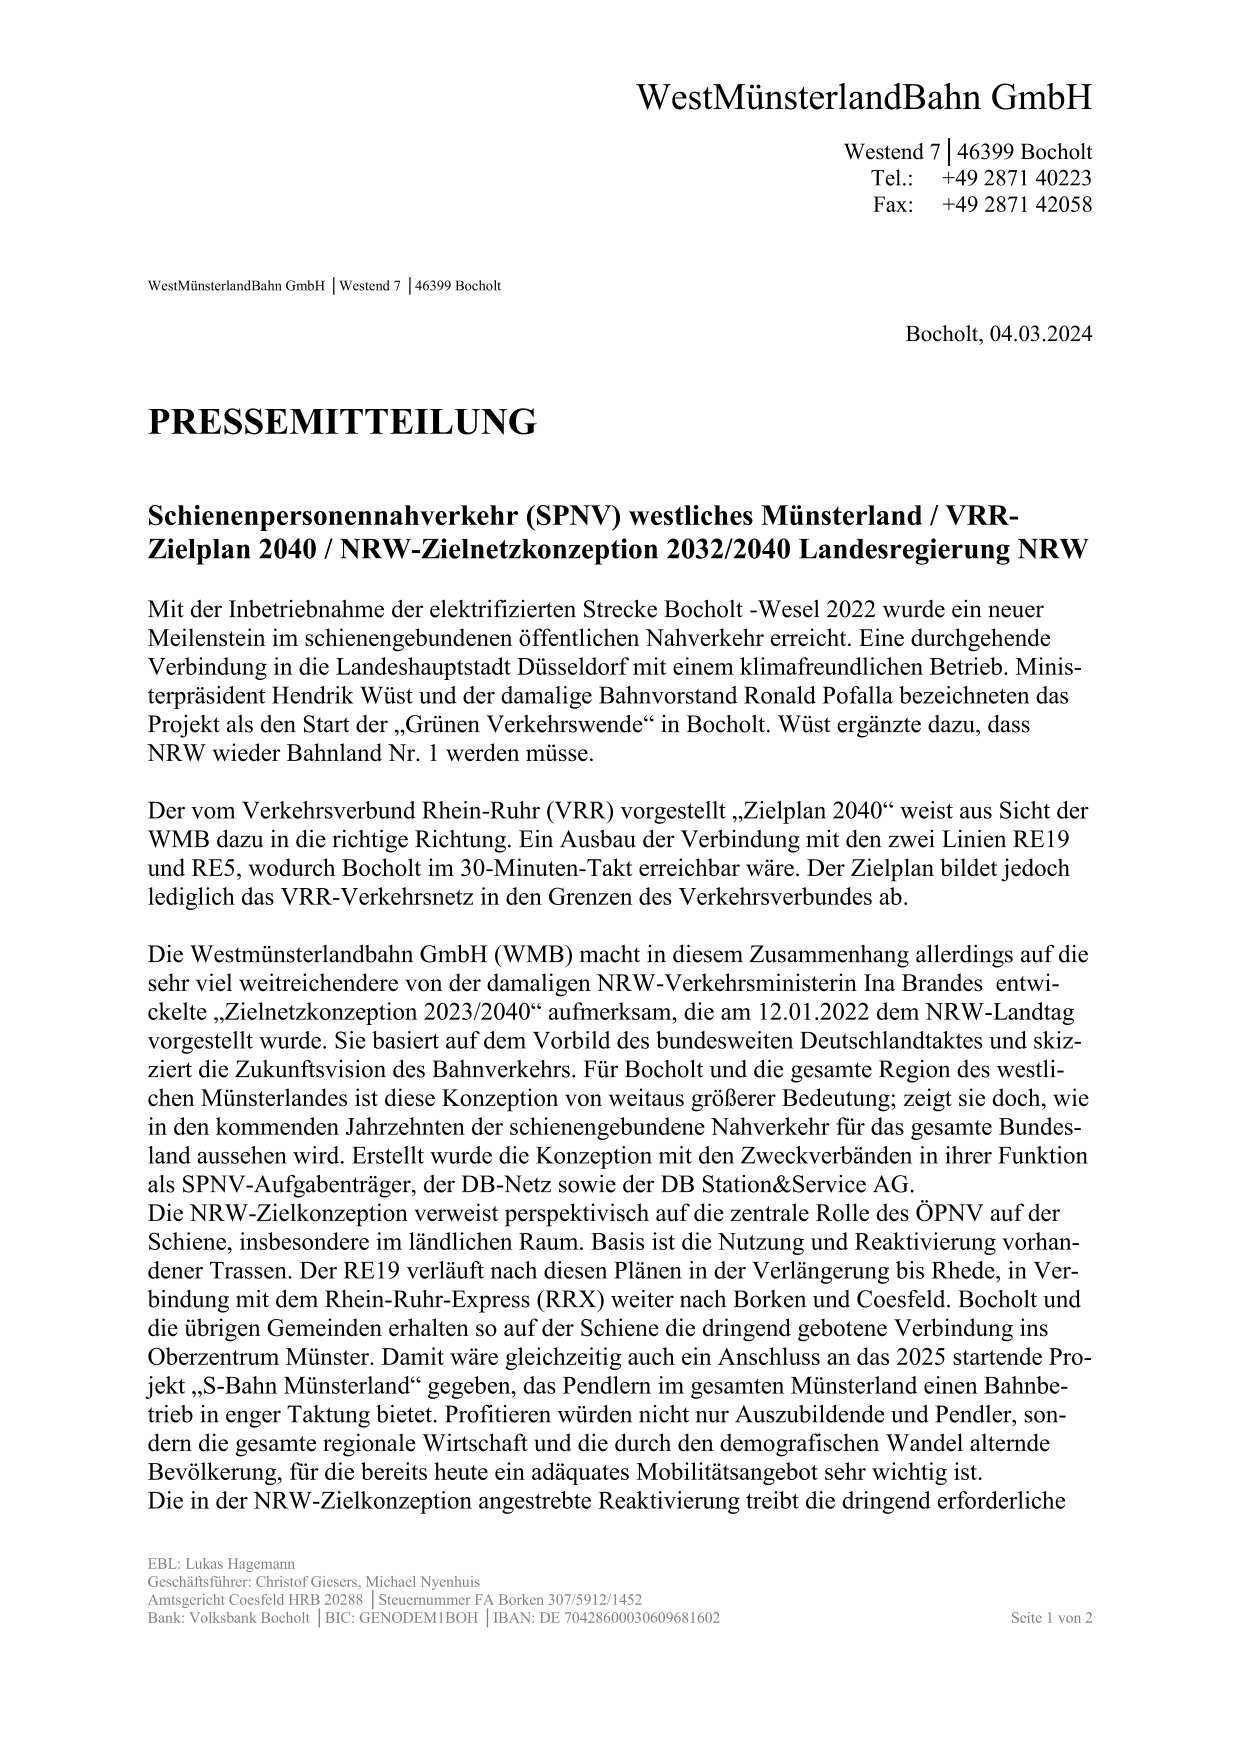 WMB-Pressmitteilung "NRW-Zielnetzkonzeption 2032/2040" Seite 1 v 2